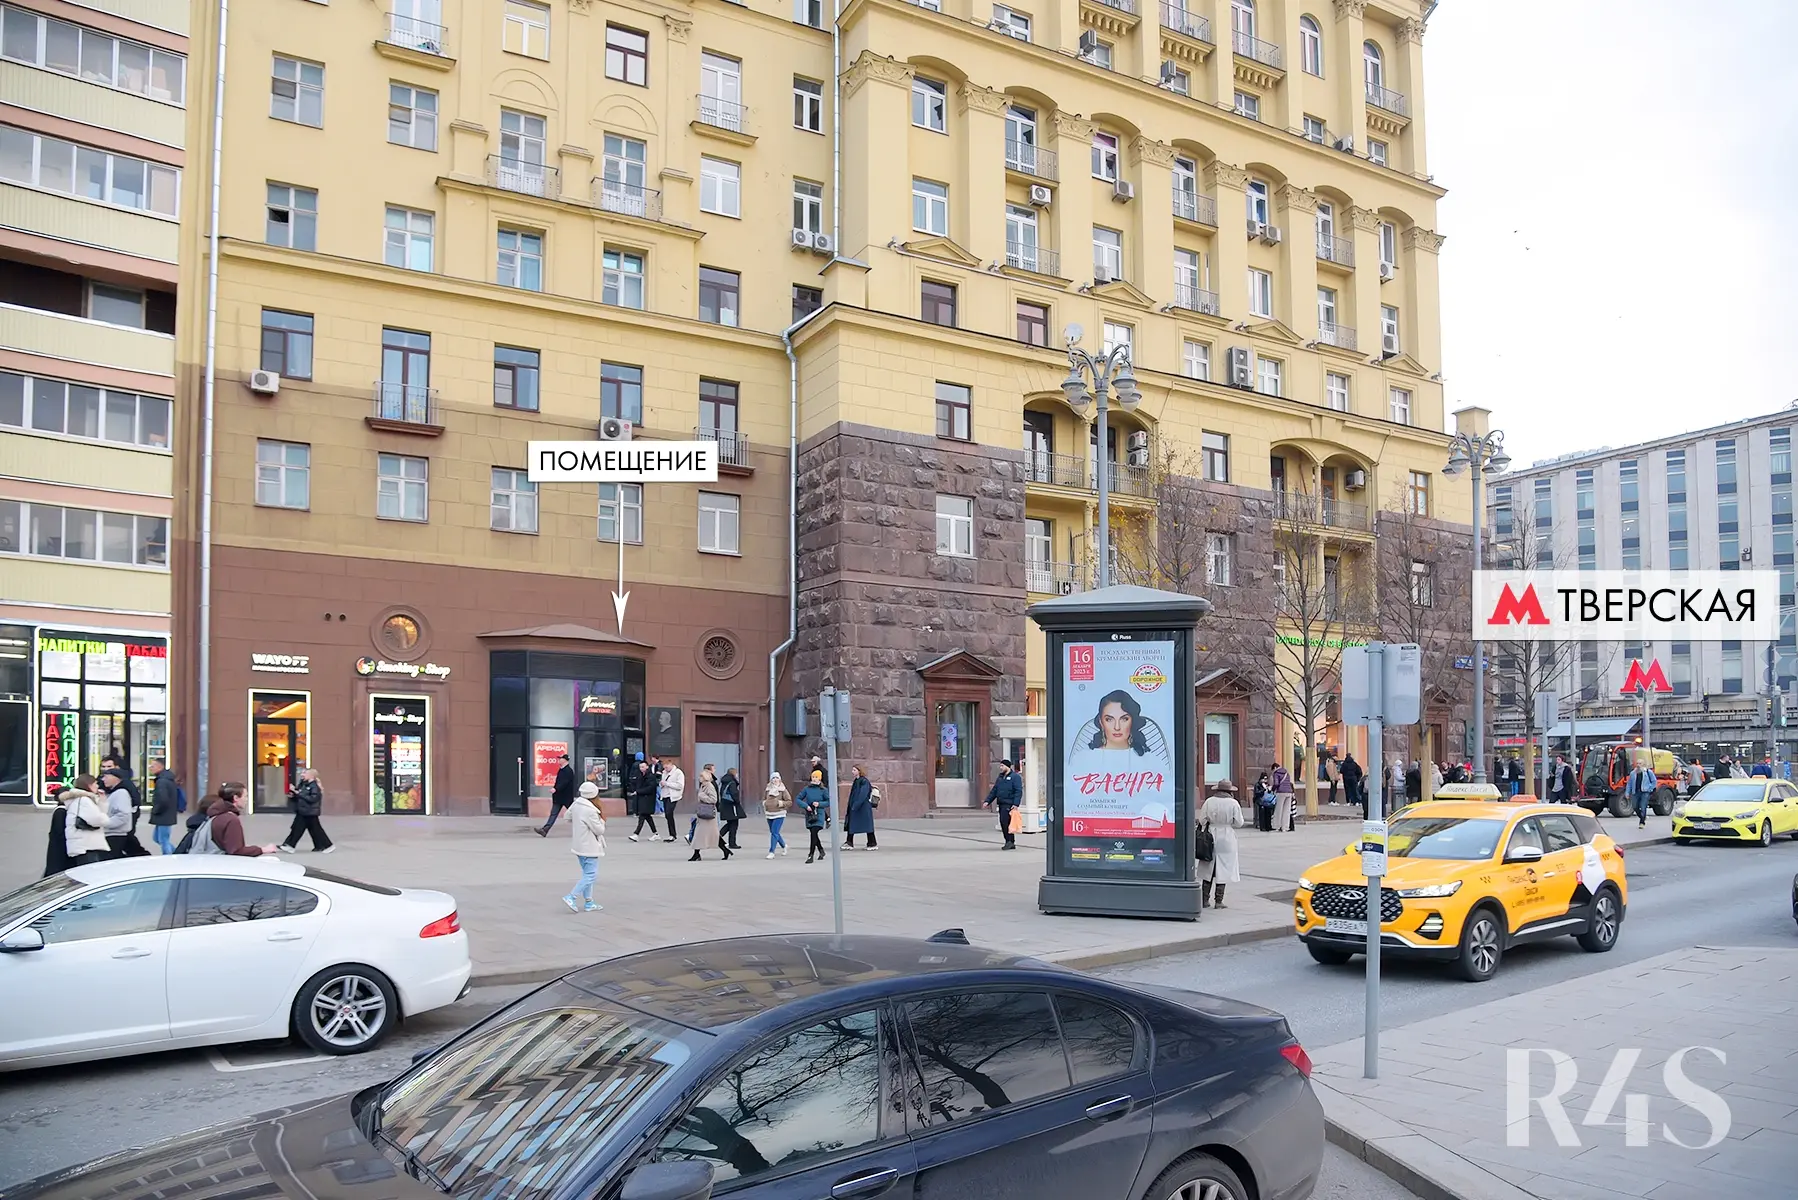 Аренда торгового помещения площадью 14.2 м2 в Москве: Тверская, 19 R4S | Realty4Sale